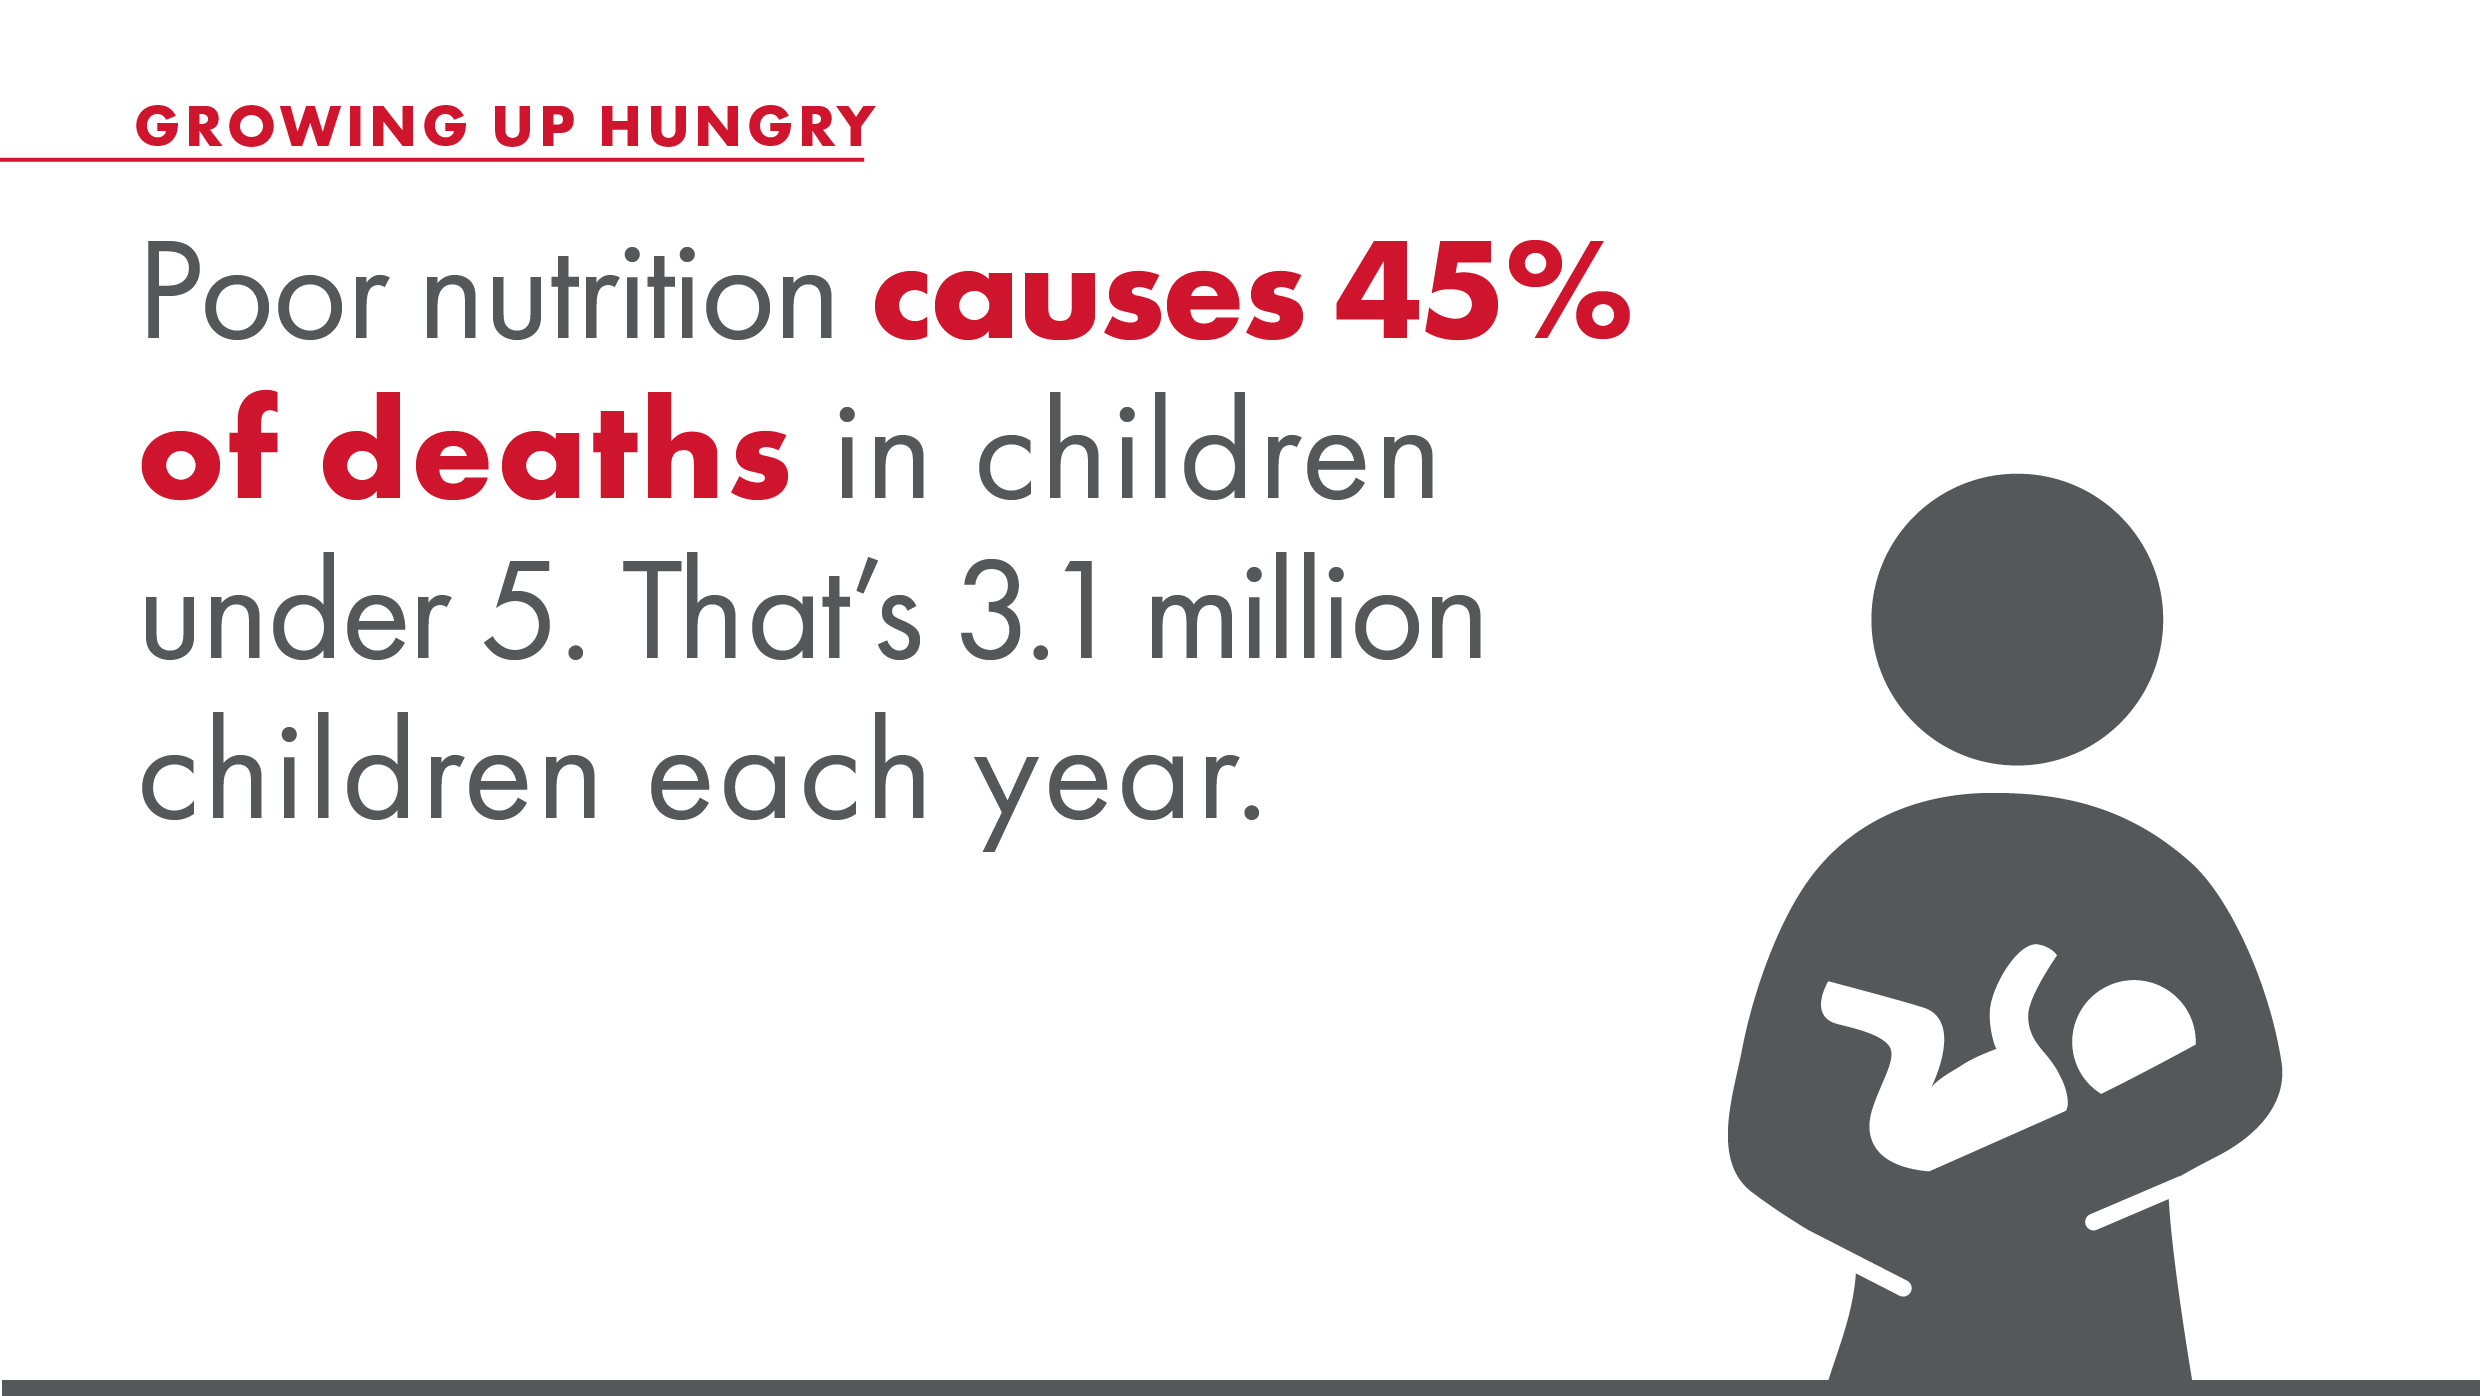 Poor nutrition causes 45% of deaths in children under 5. That's 3.1 million children each year.